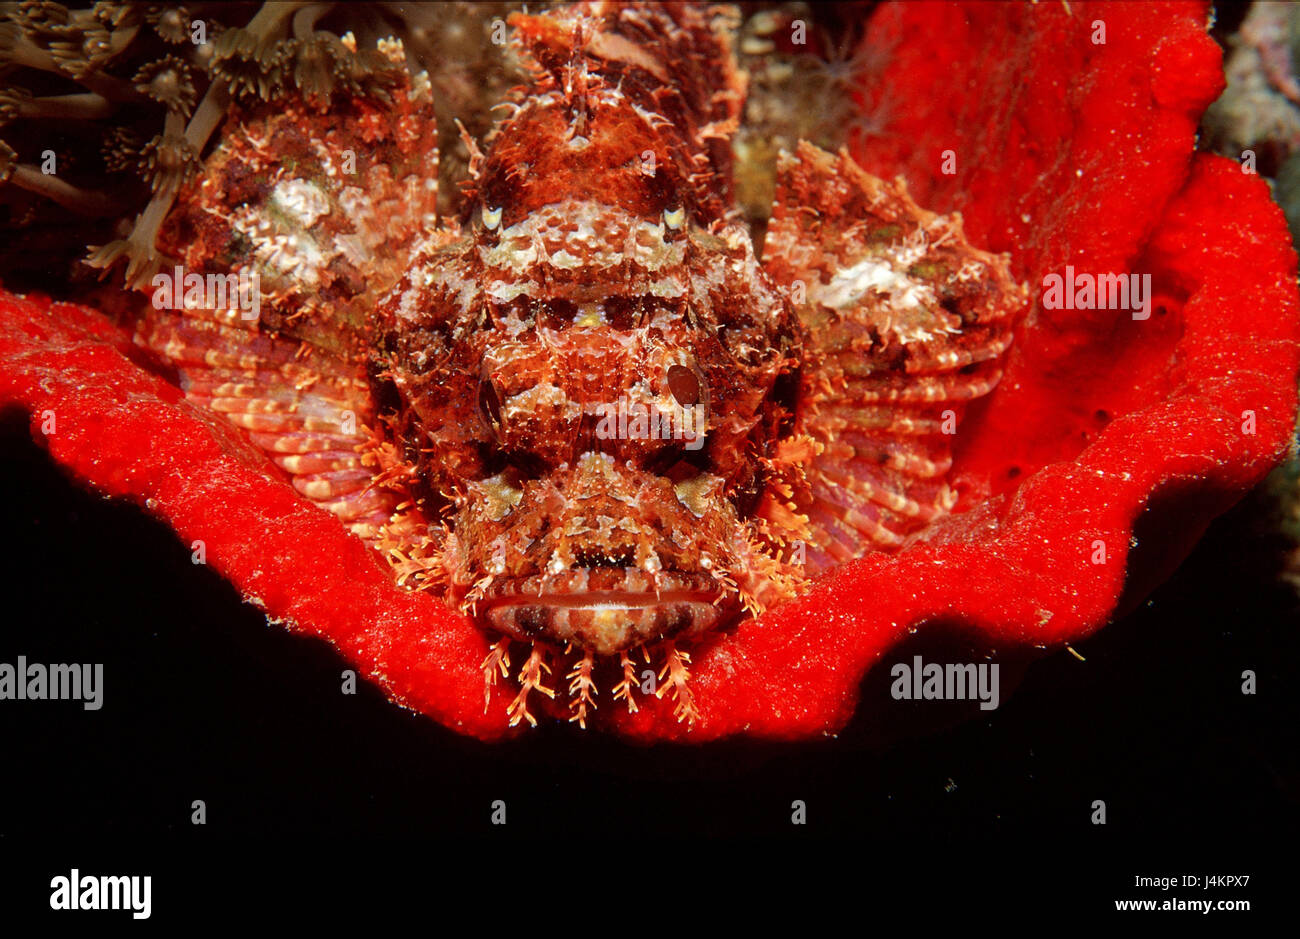 Bearded scorpion fish, Scorpaenopsis oxycephalus, fungus, red Stock Photo